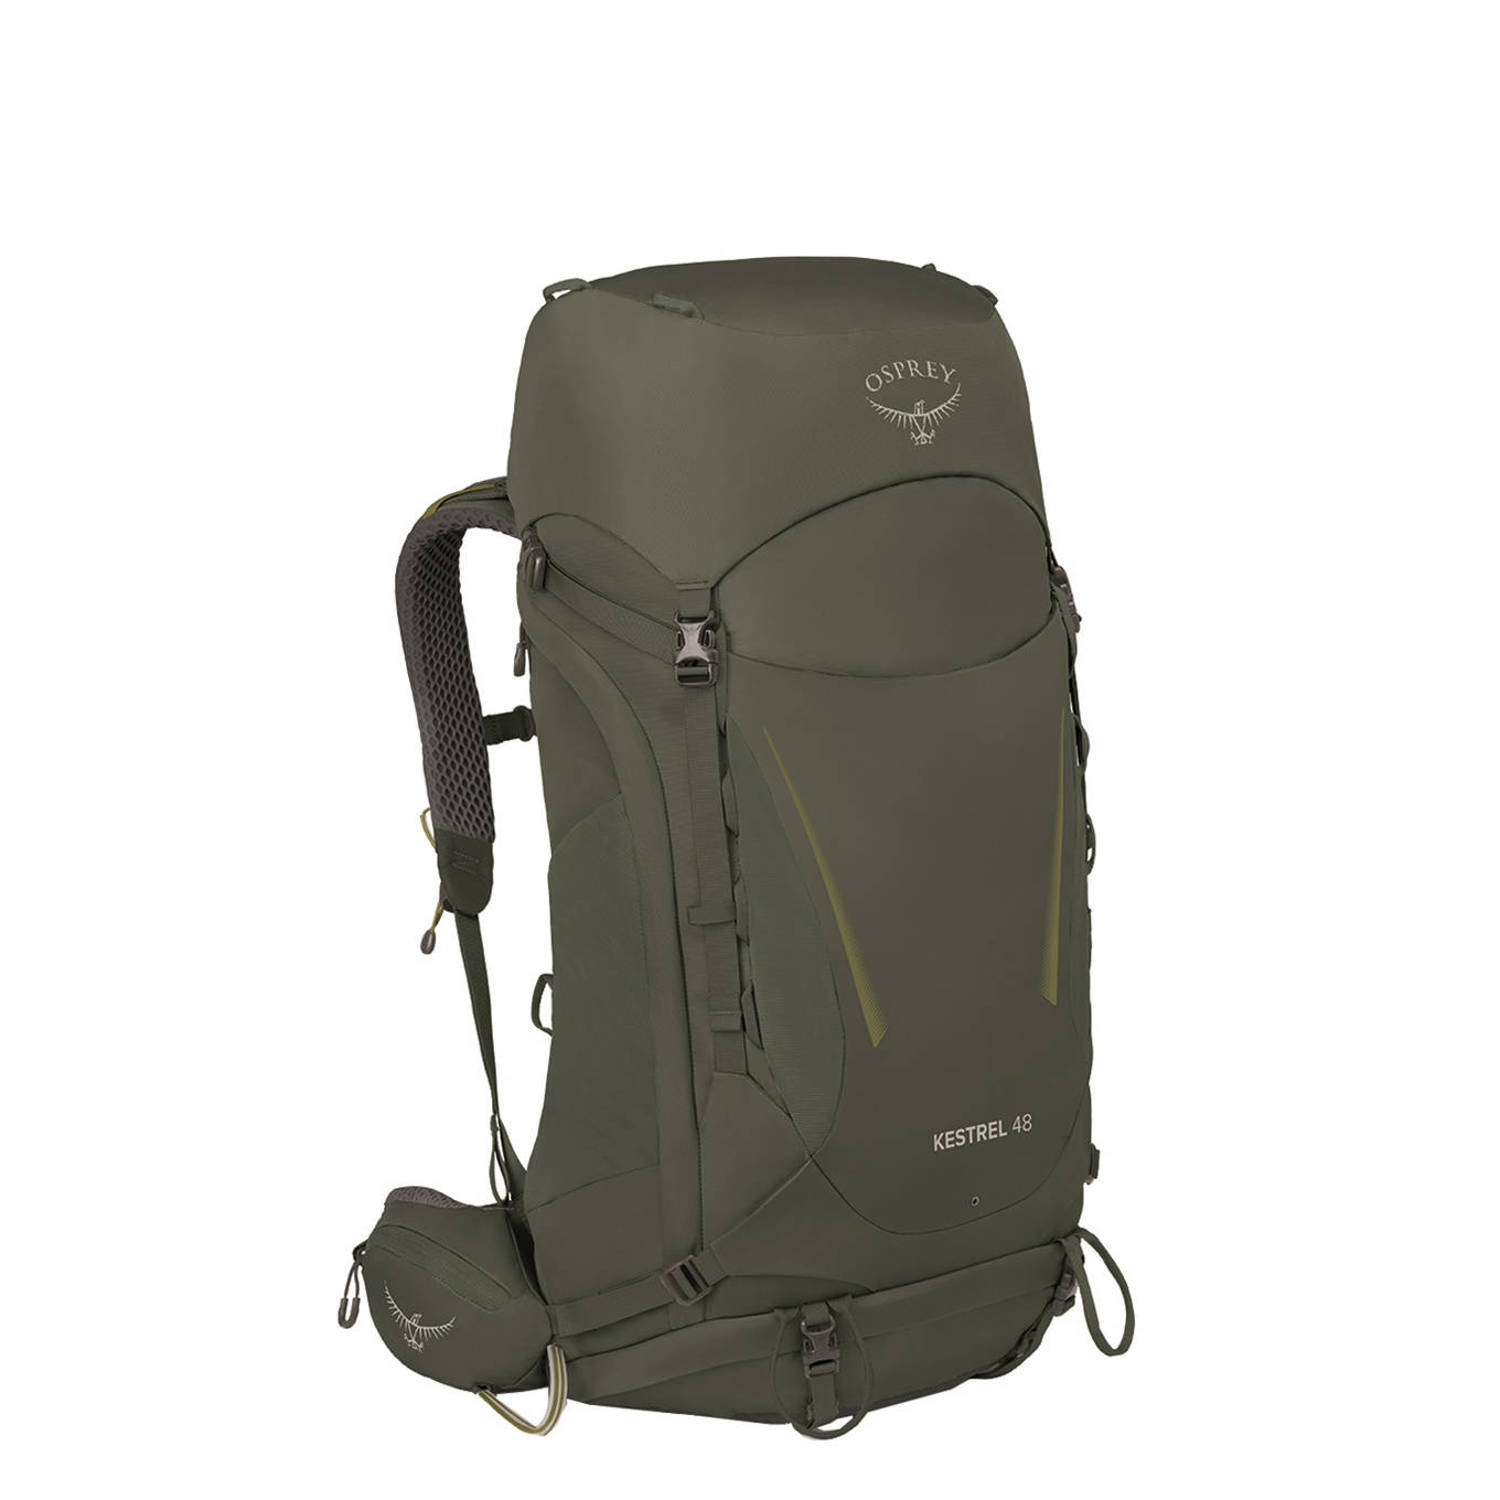 Osprey backpack Kestrel 48L S M kaki